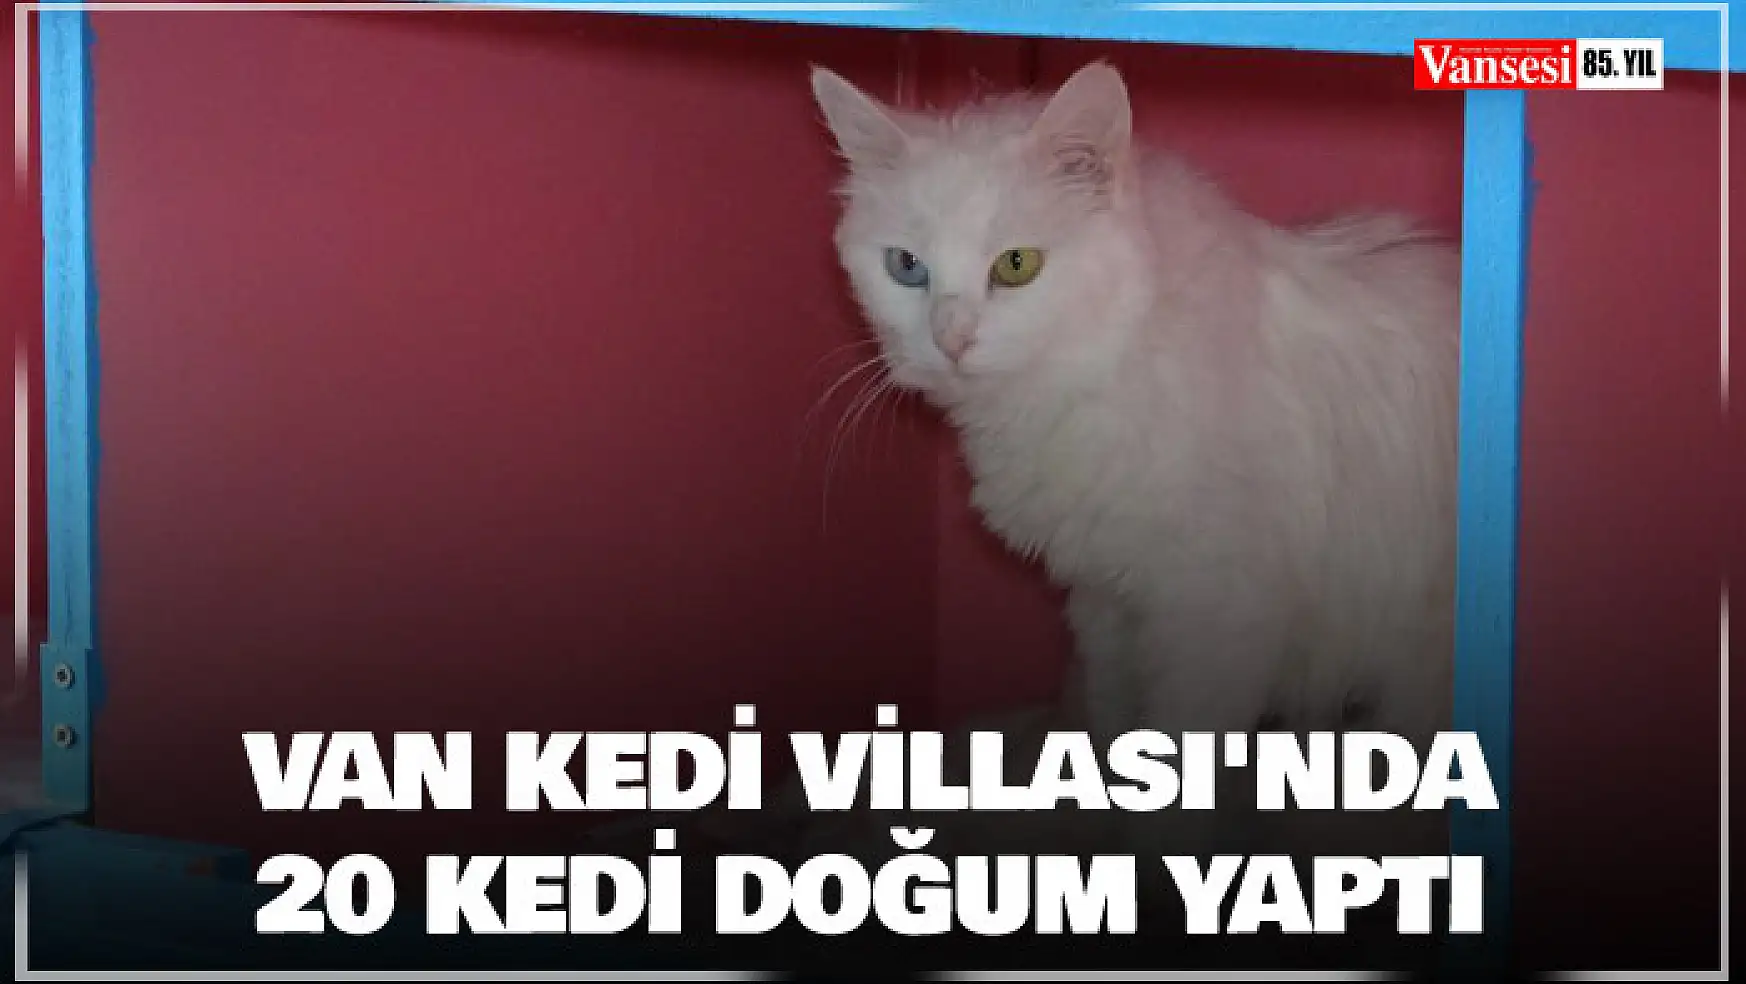 Van Kedi Villası'nda 20 kedi doğum yaptı